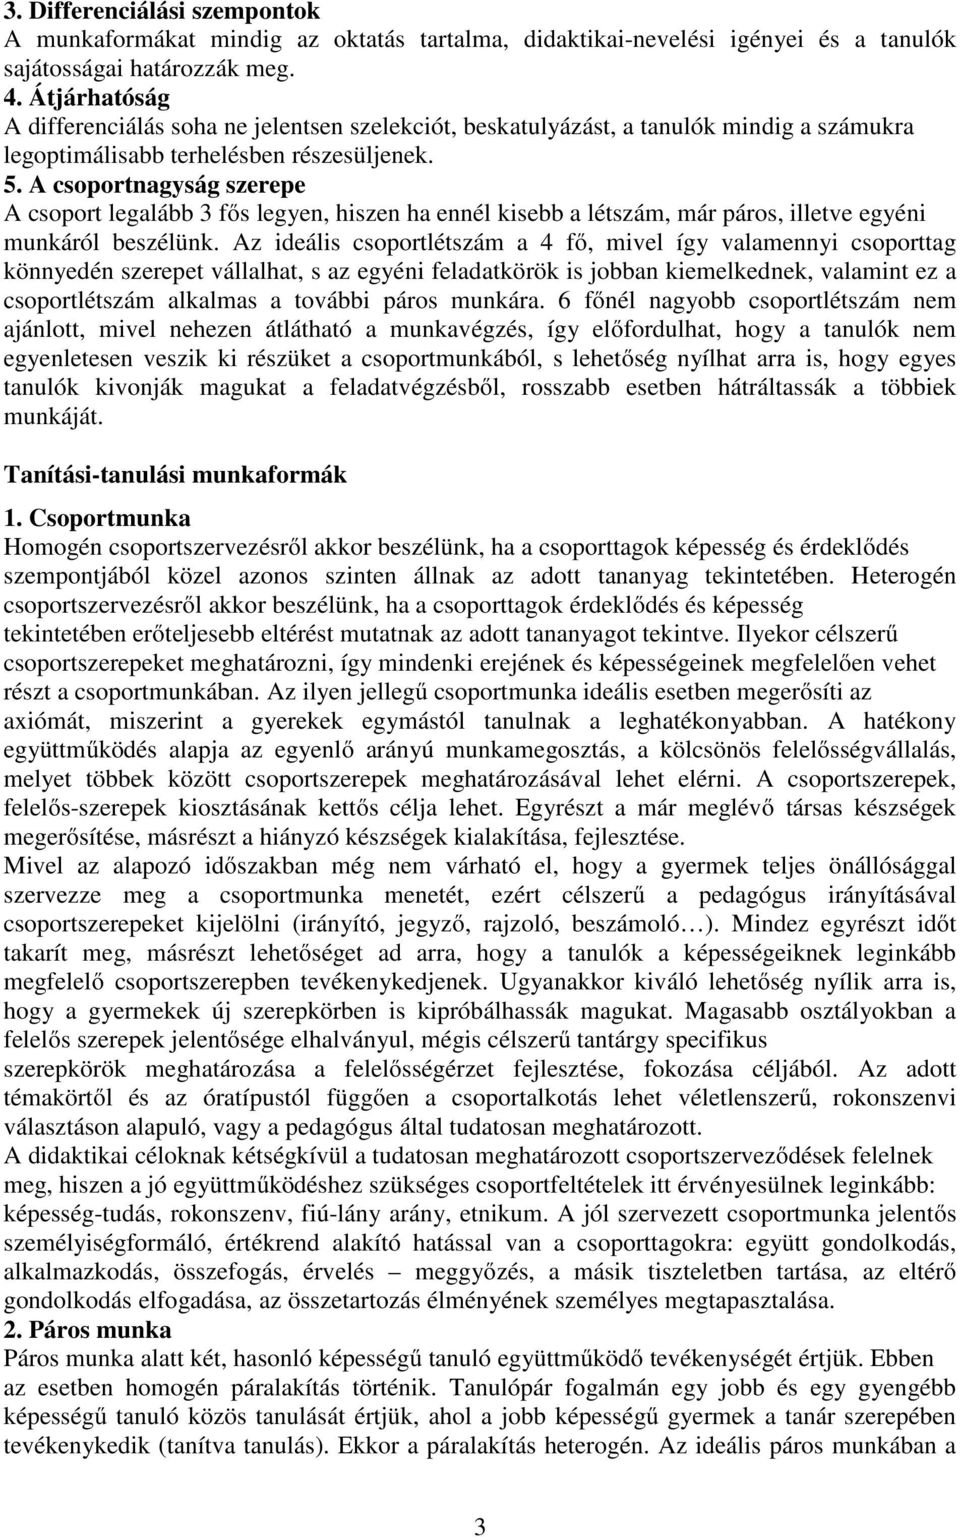 TERMÉSZETISMERET Helyi tanterv. 9. évfolyam - PDF Free Download